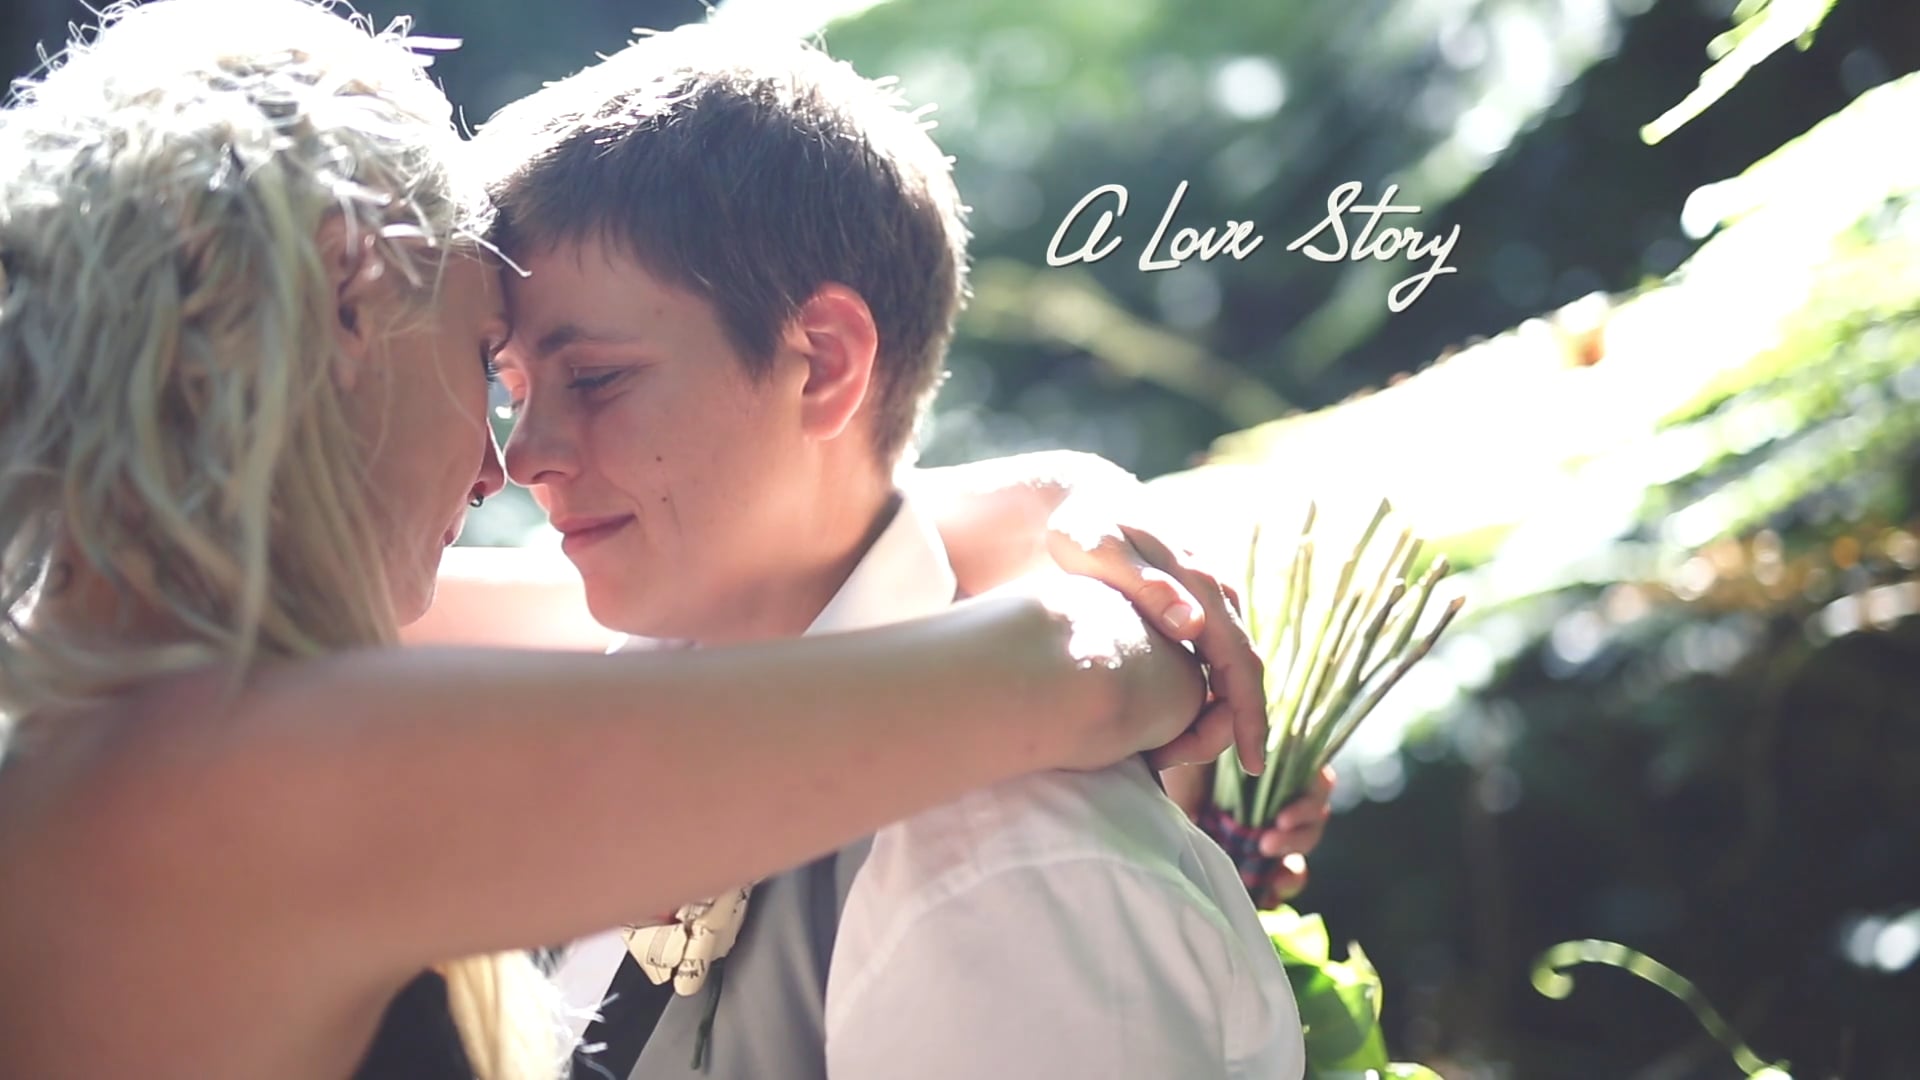 Bobby and Hanna - a Love Story & a Wedding